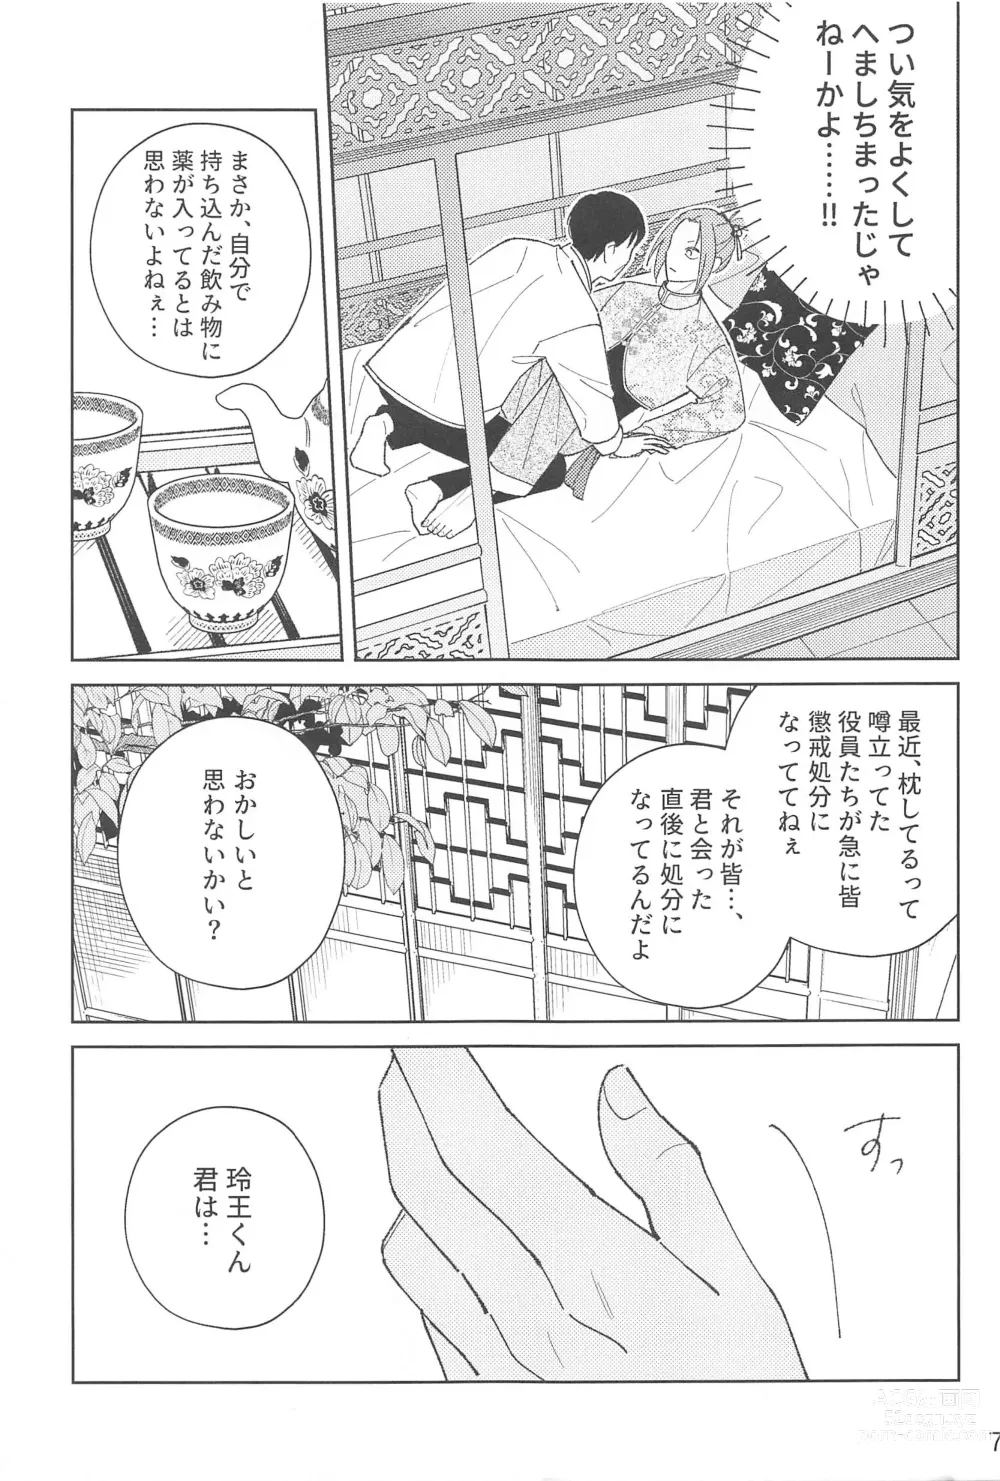 Page 6 of doujinshi Wo AI Ni